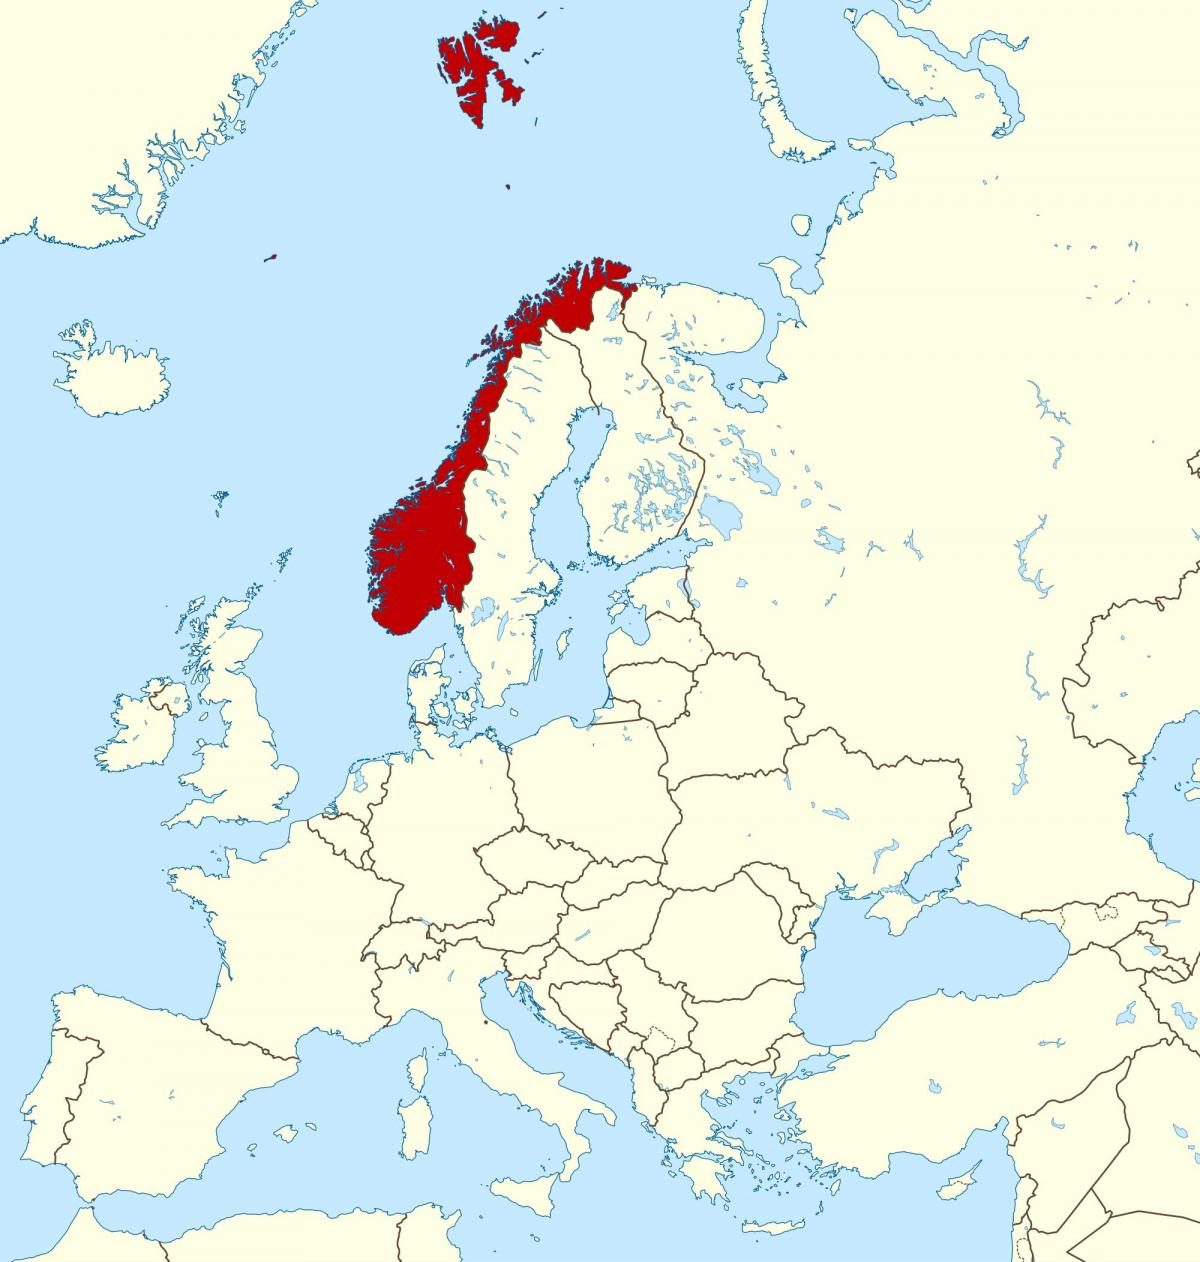 خريطة النرويج وأوروبا